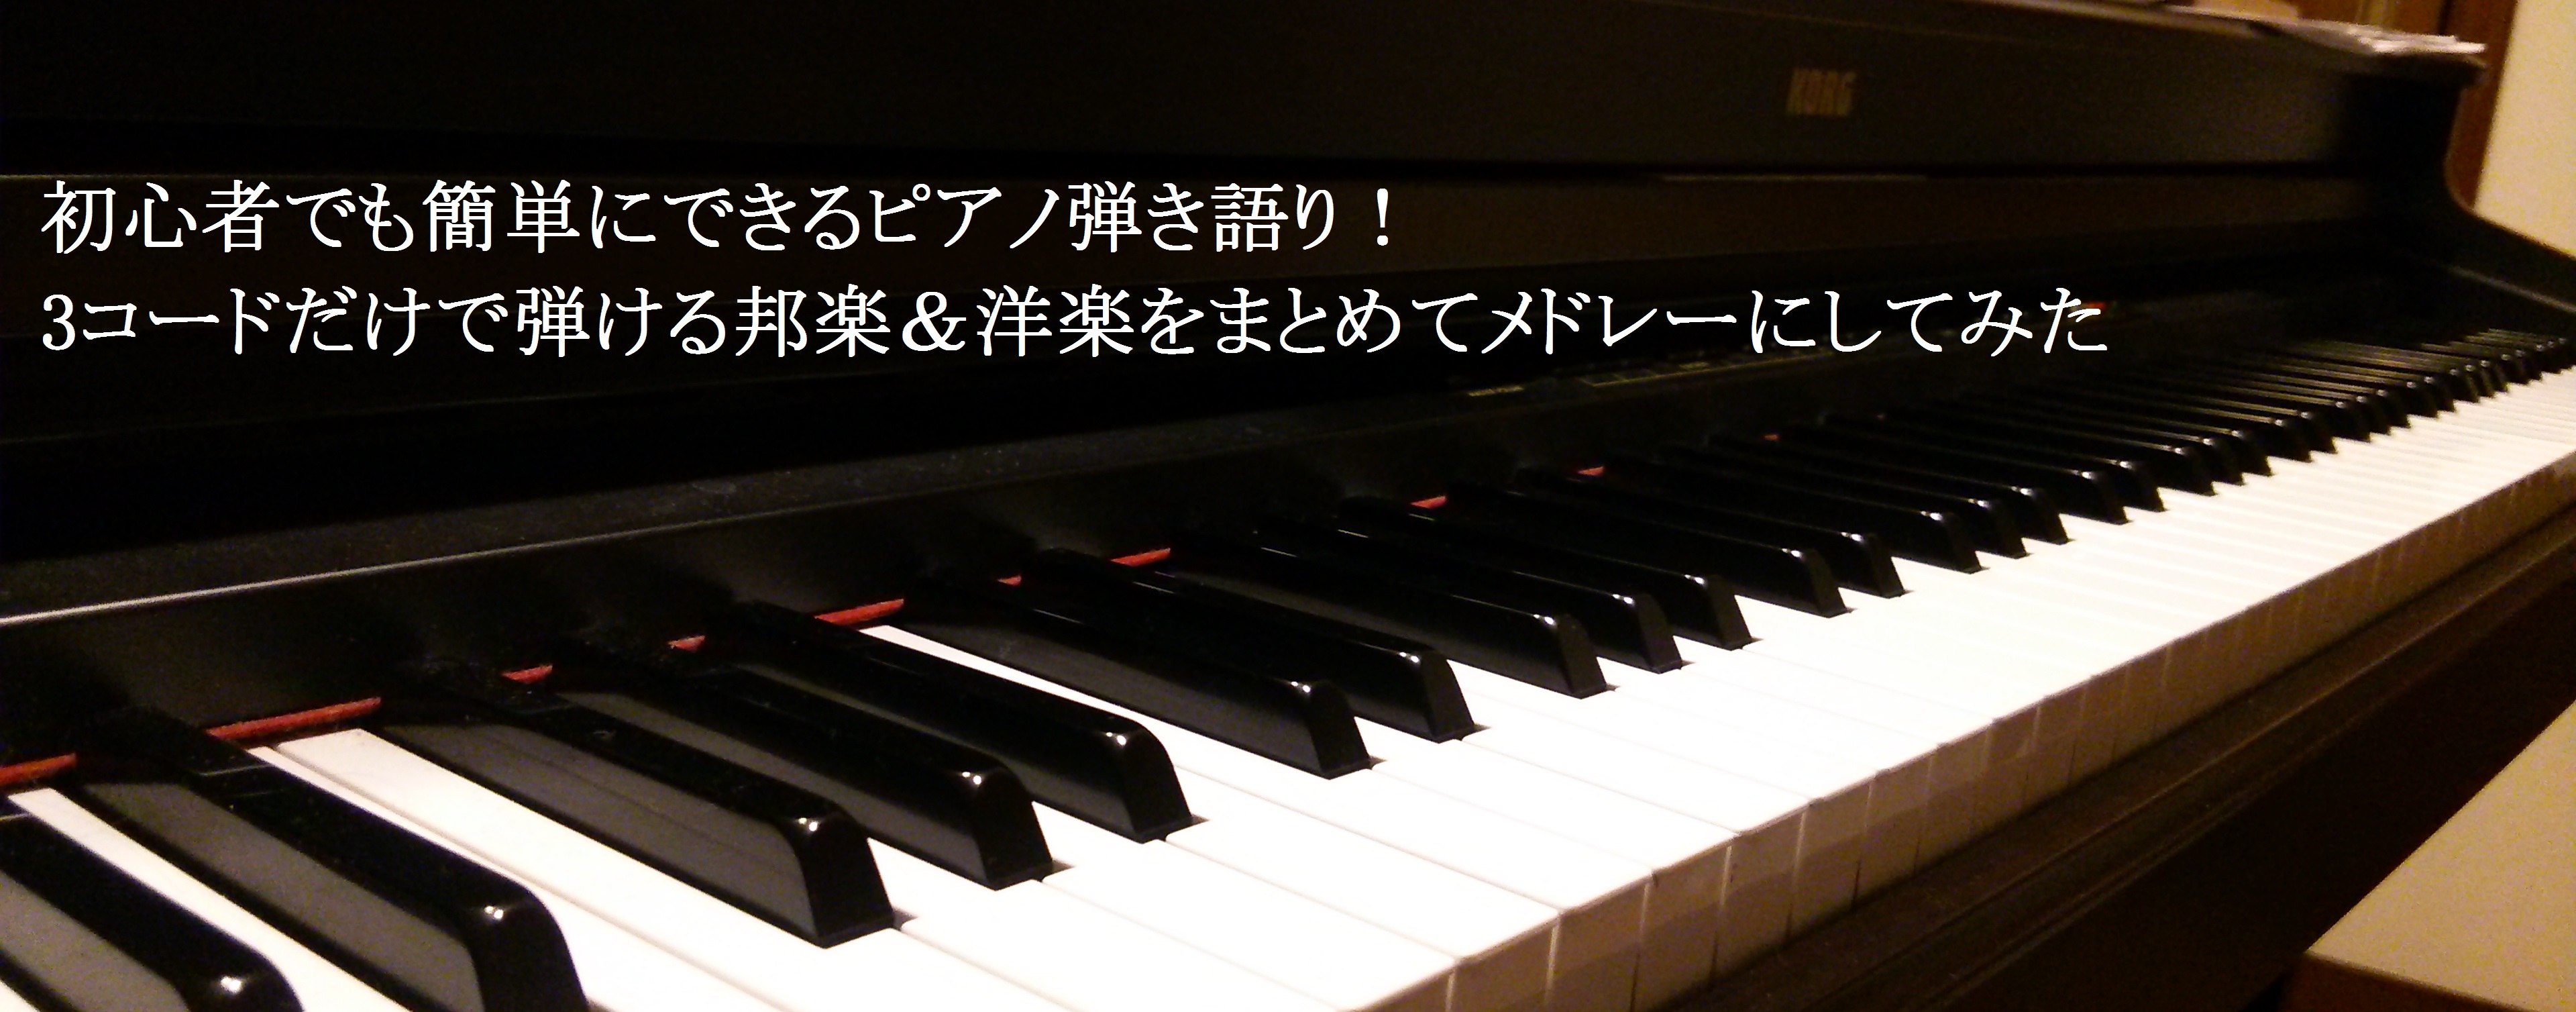 ピアノ弾き語り初心者でも簡単にできる 3コードだけで弾ける曲を集めてみた がきえ